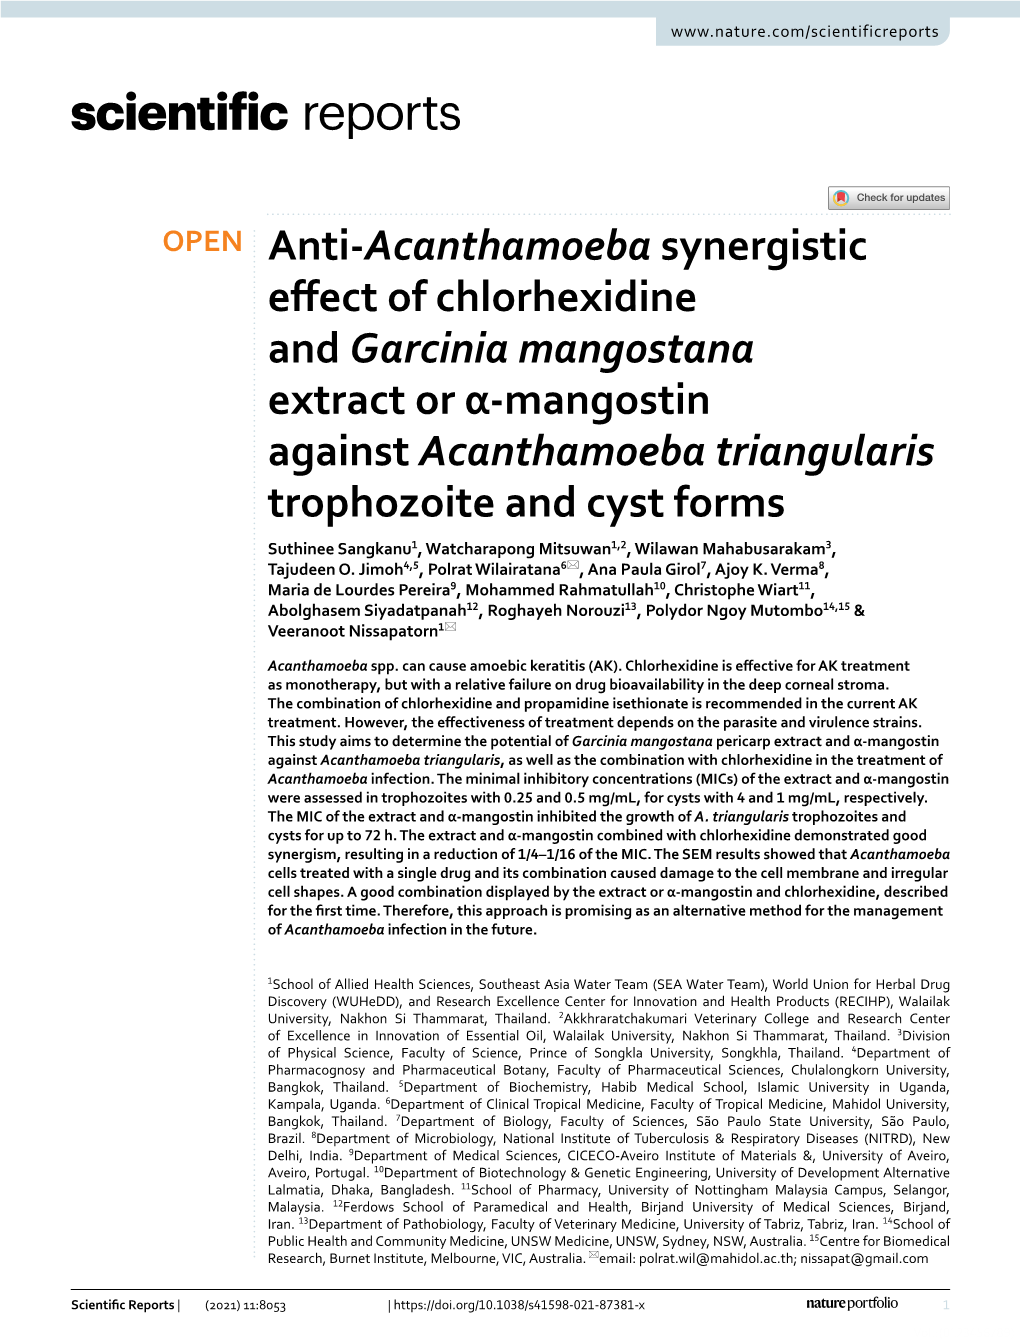 Anti-Acanthamoeba Synergistic Effect of Chlorhexidine and Garcinia